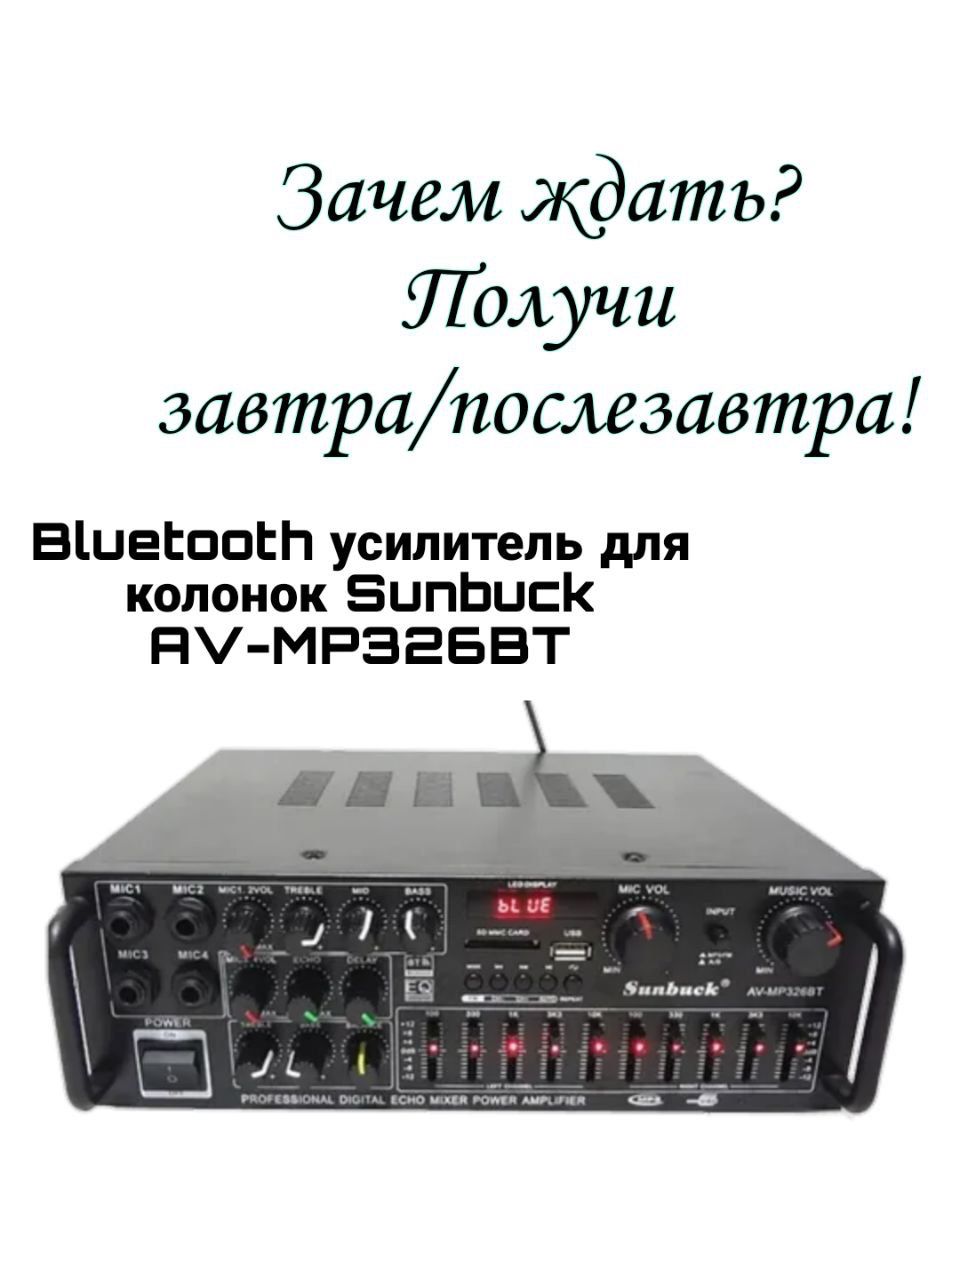 Sunbuck av mp326bt. Sunbuck 326bt усилитель. Sunbuck av-mp326bt отзывы.